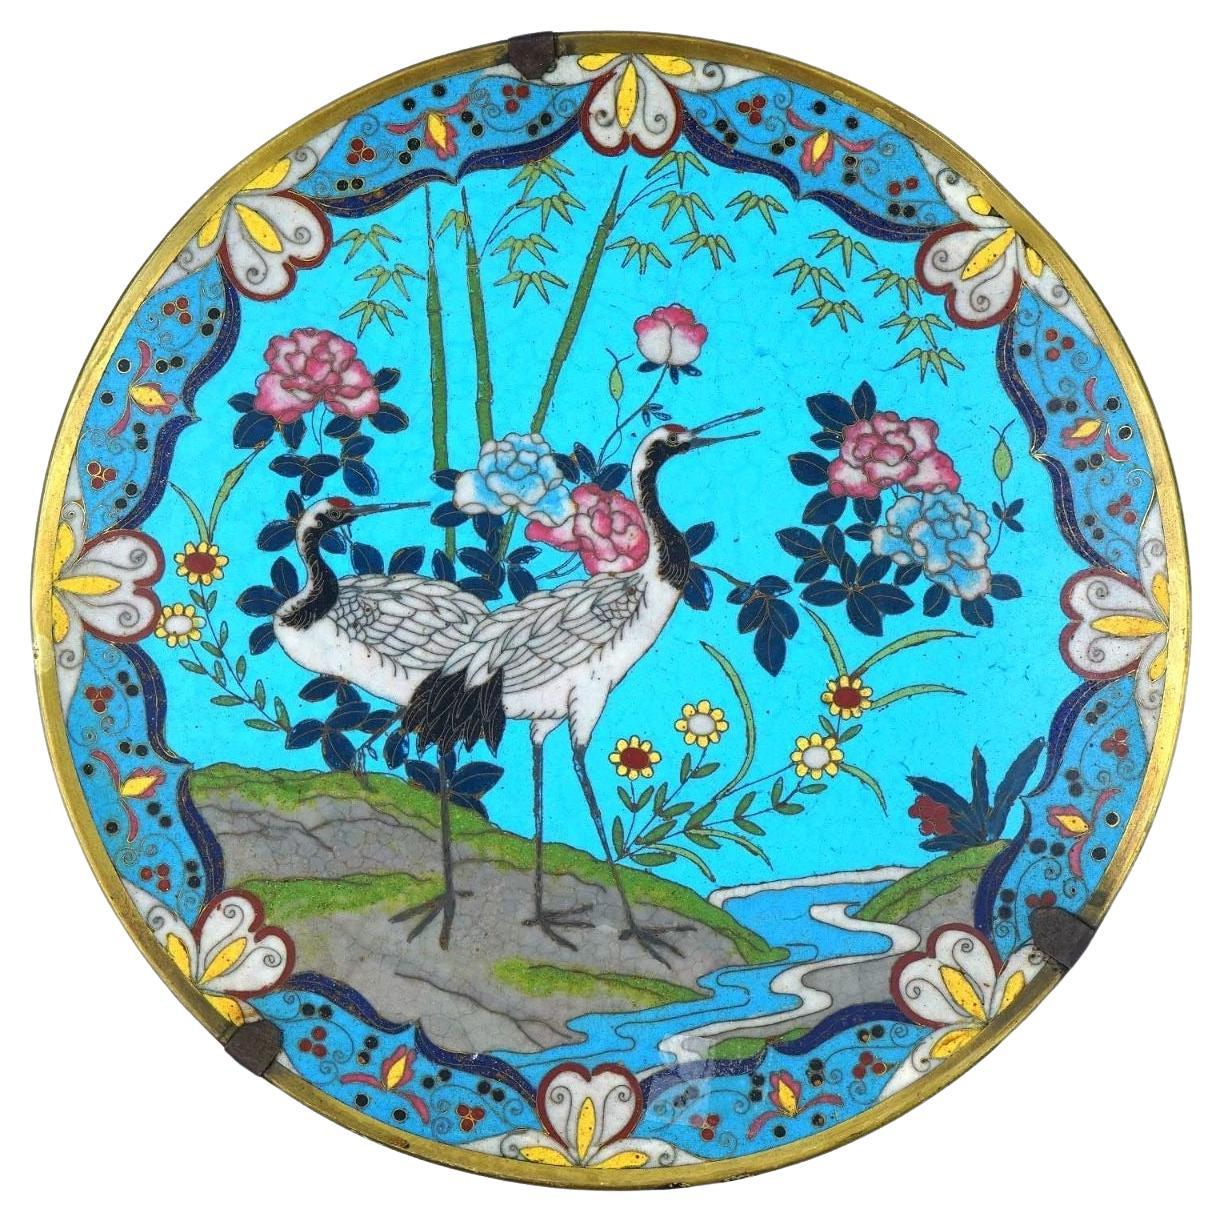 19th Century Cloisonne Plate Depicting Cranes